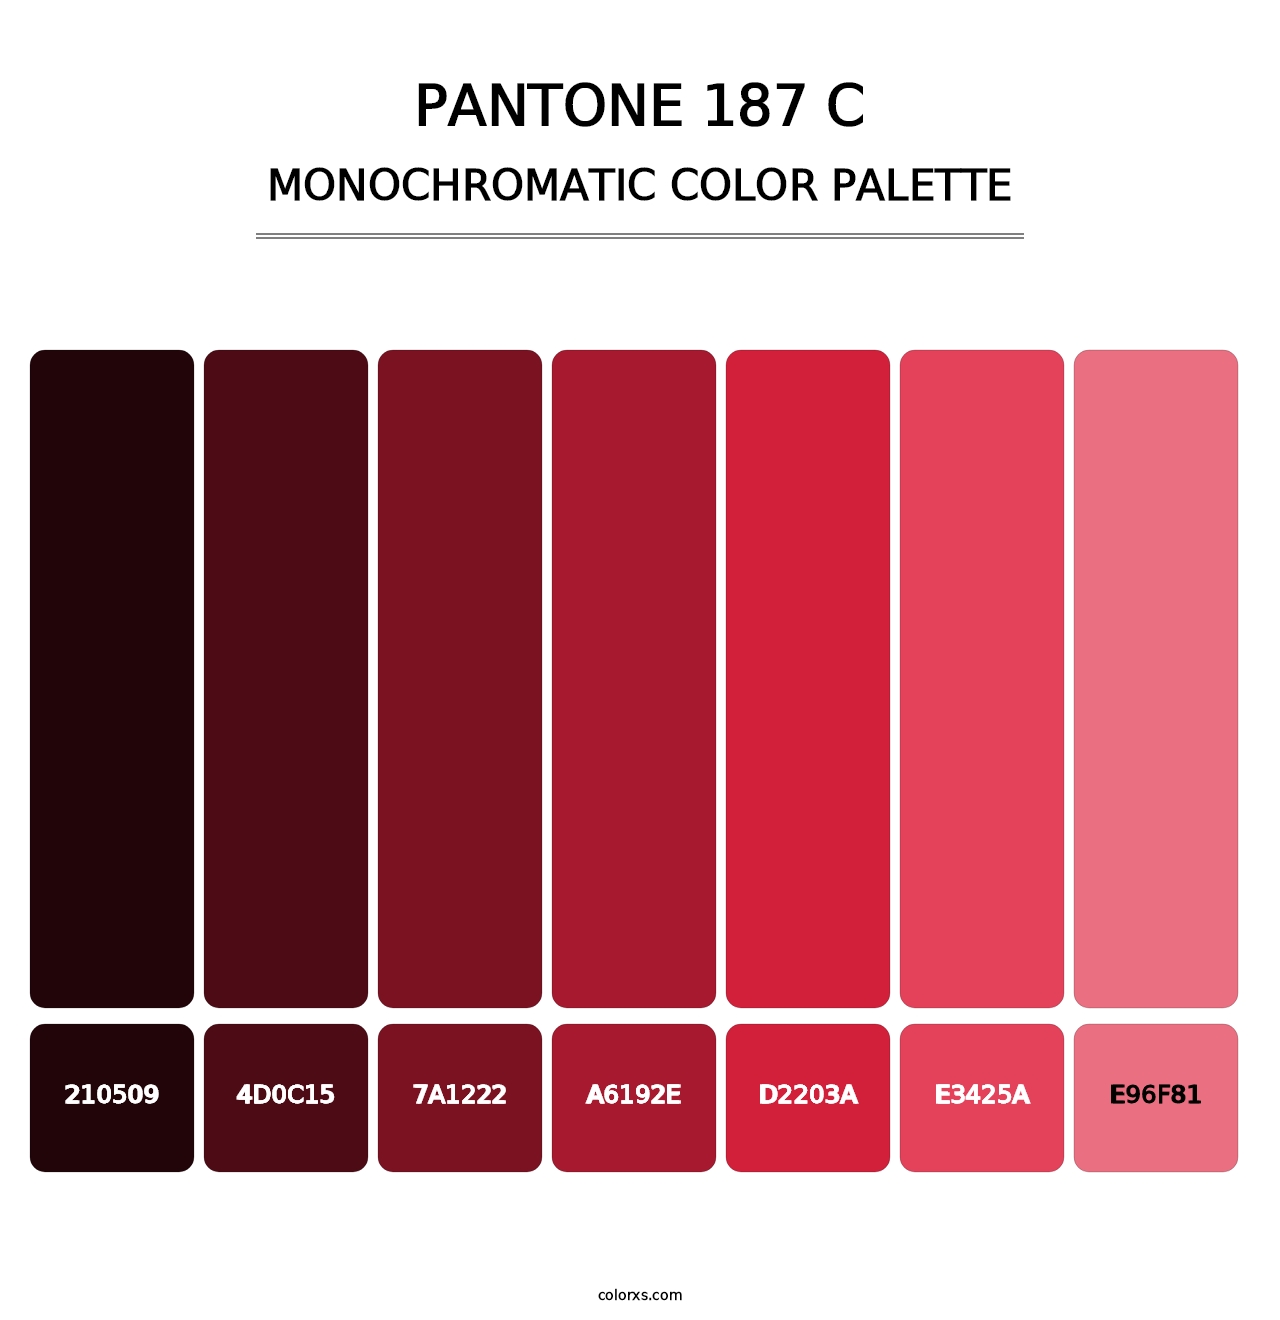 PANTONE 187 C - Monochromatic Color Palette